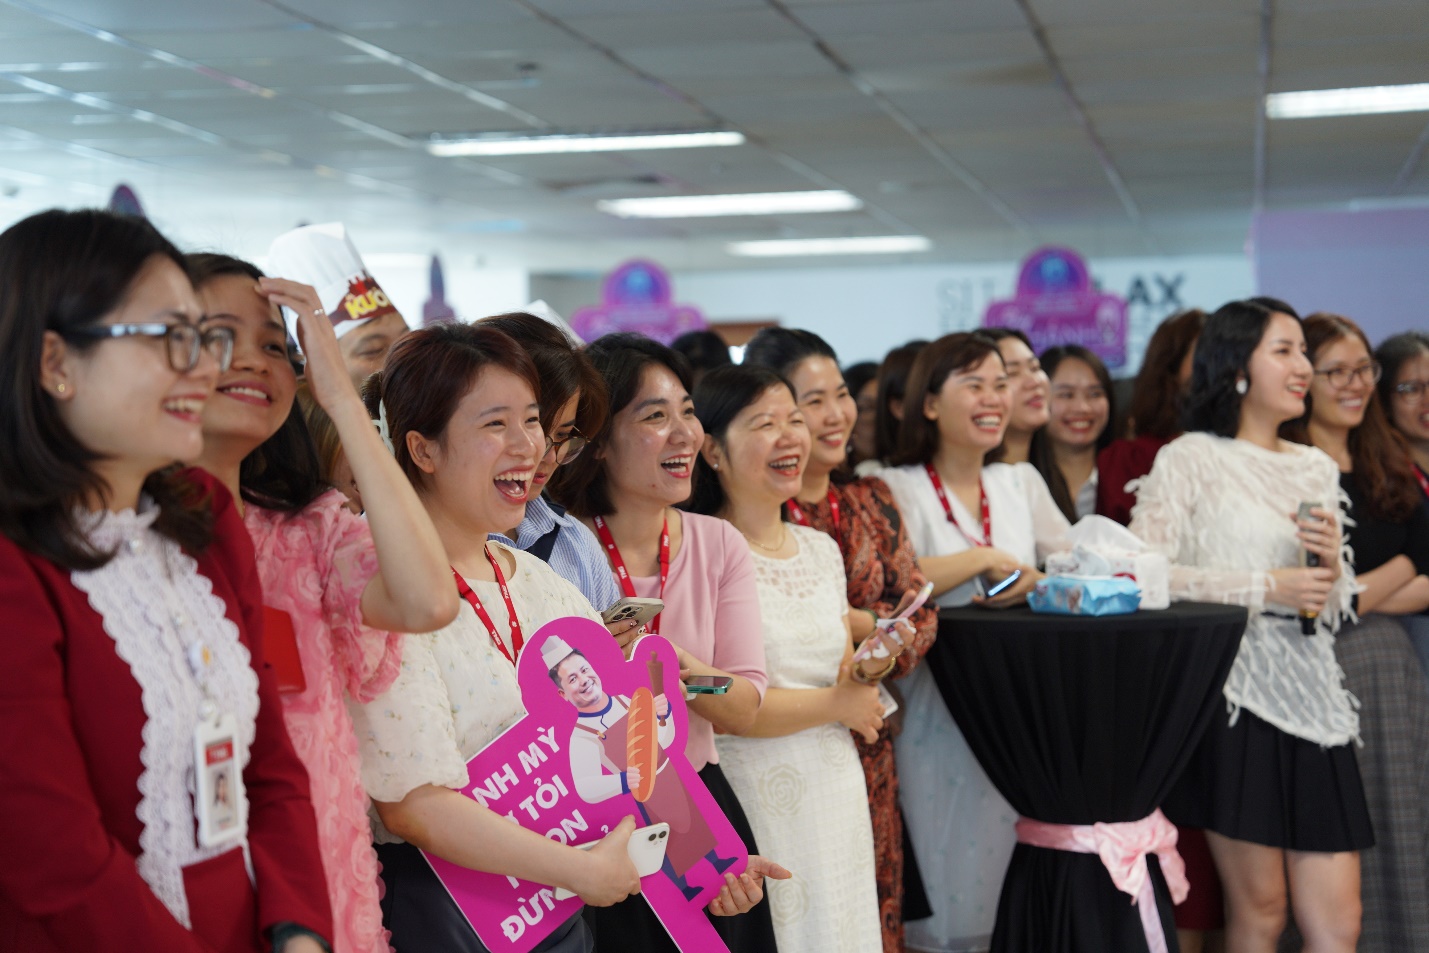 TNG Holdings Vietnam vào “Top 15 doanh nghiệp tiêu biểu có nguồn nhân lực hạnh phúc” - Ảnh 1.